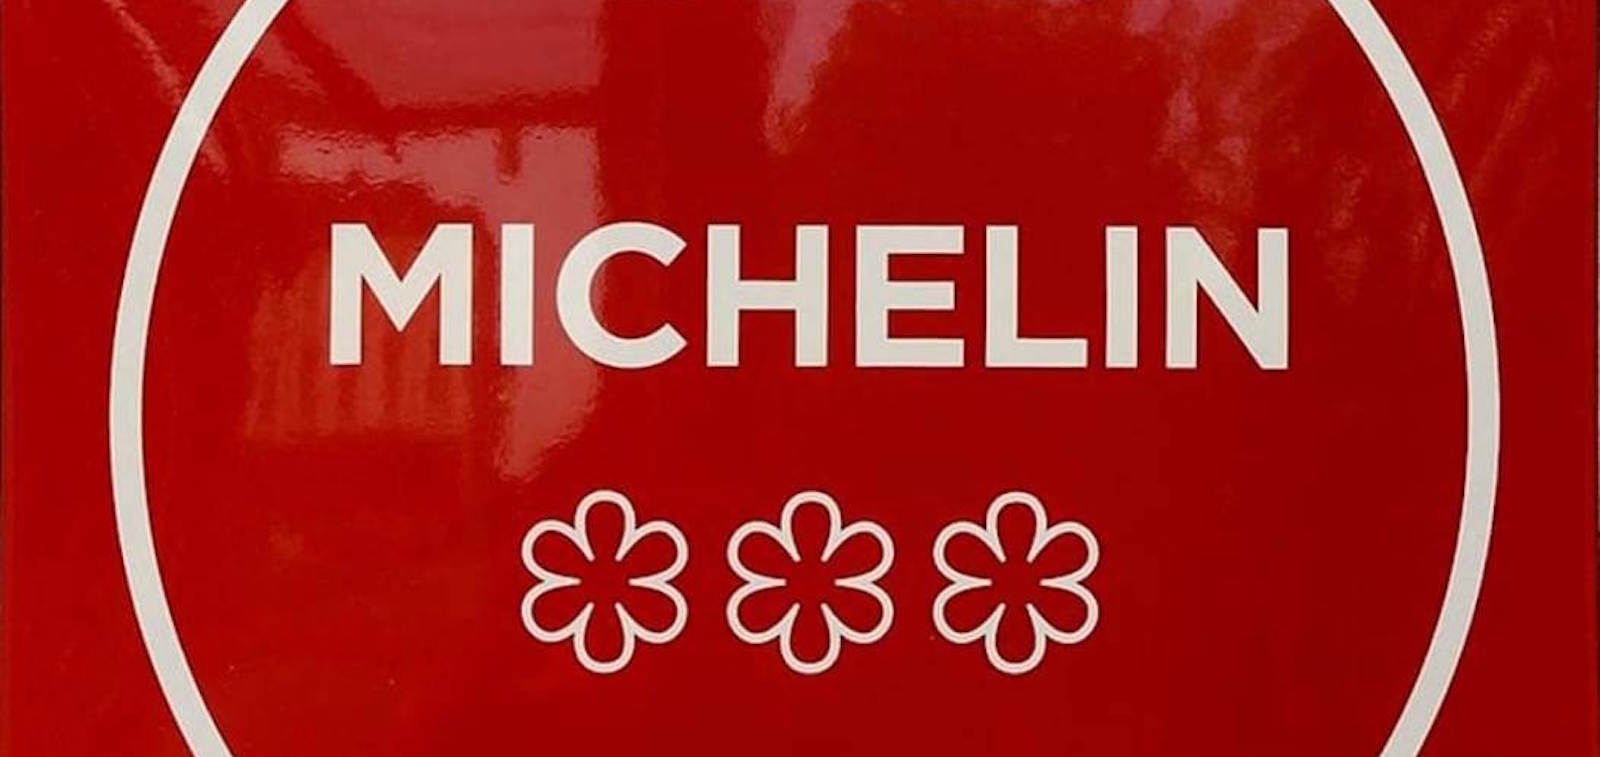 Liguria, 11 ristoranti con la stella Michelin: tre ingressi, un locale fuori dalla lista. Conferme a Genova per San Giorgio e Cook